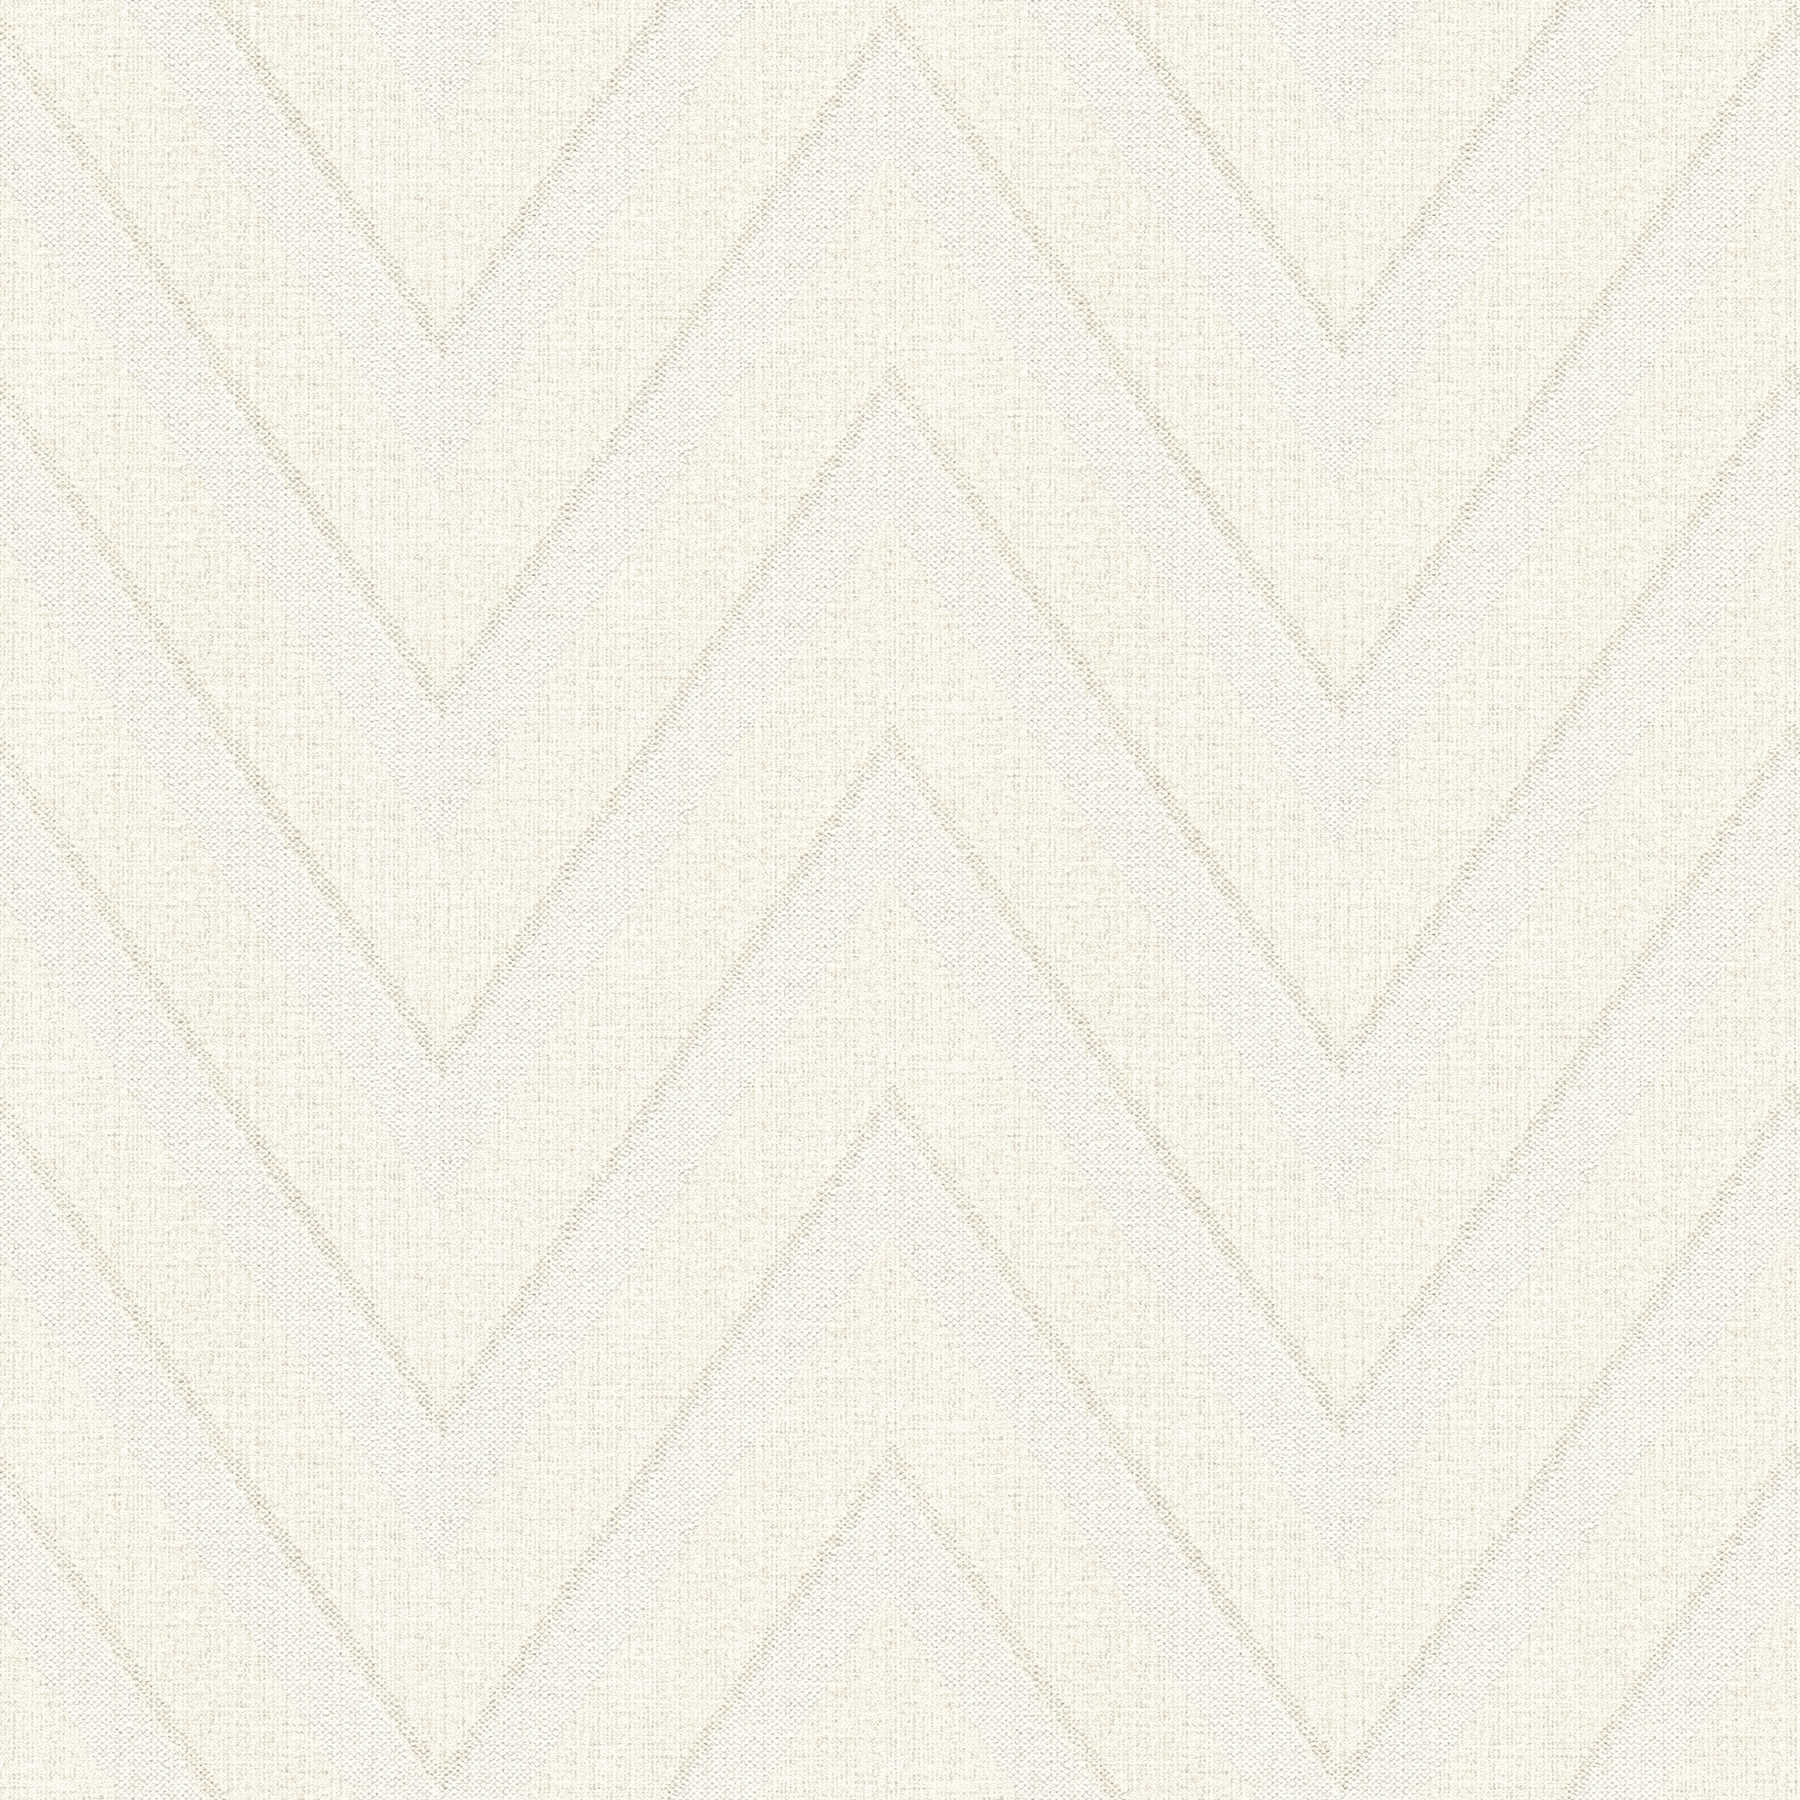 Linen look wallpaper zigzag stripes - beige, cream
